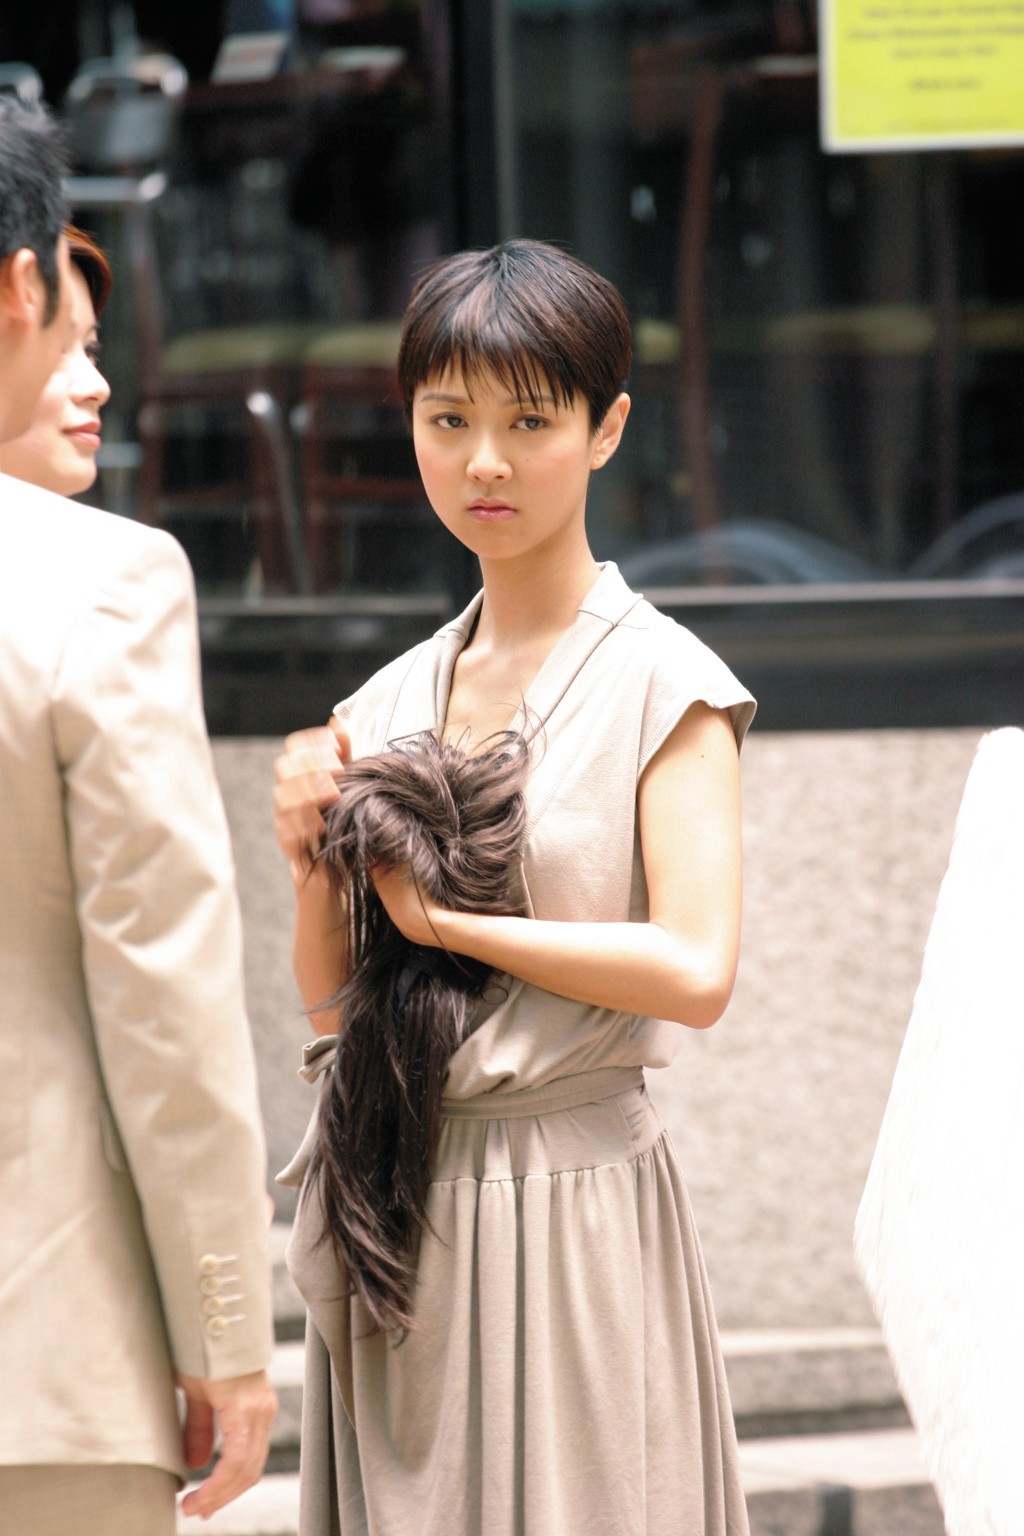 尤其拍TVB剧集《学警雄心》剪了短发，颈长特徵更突出。